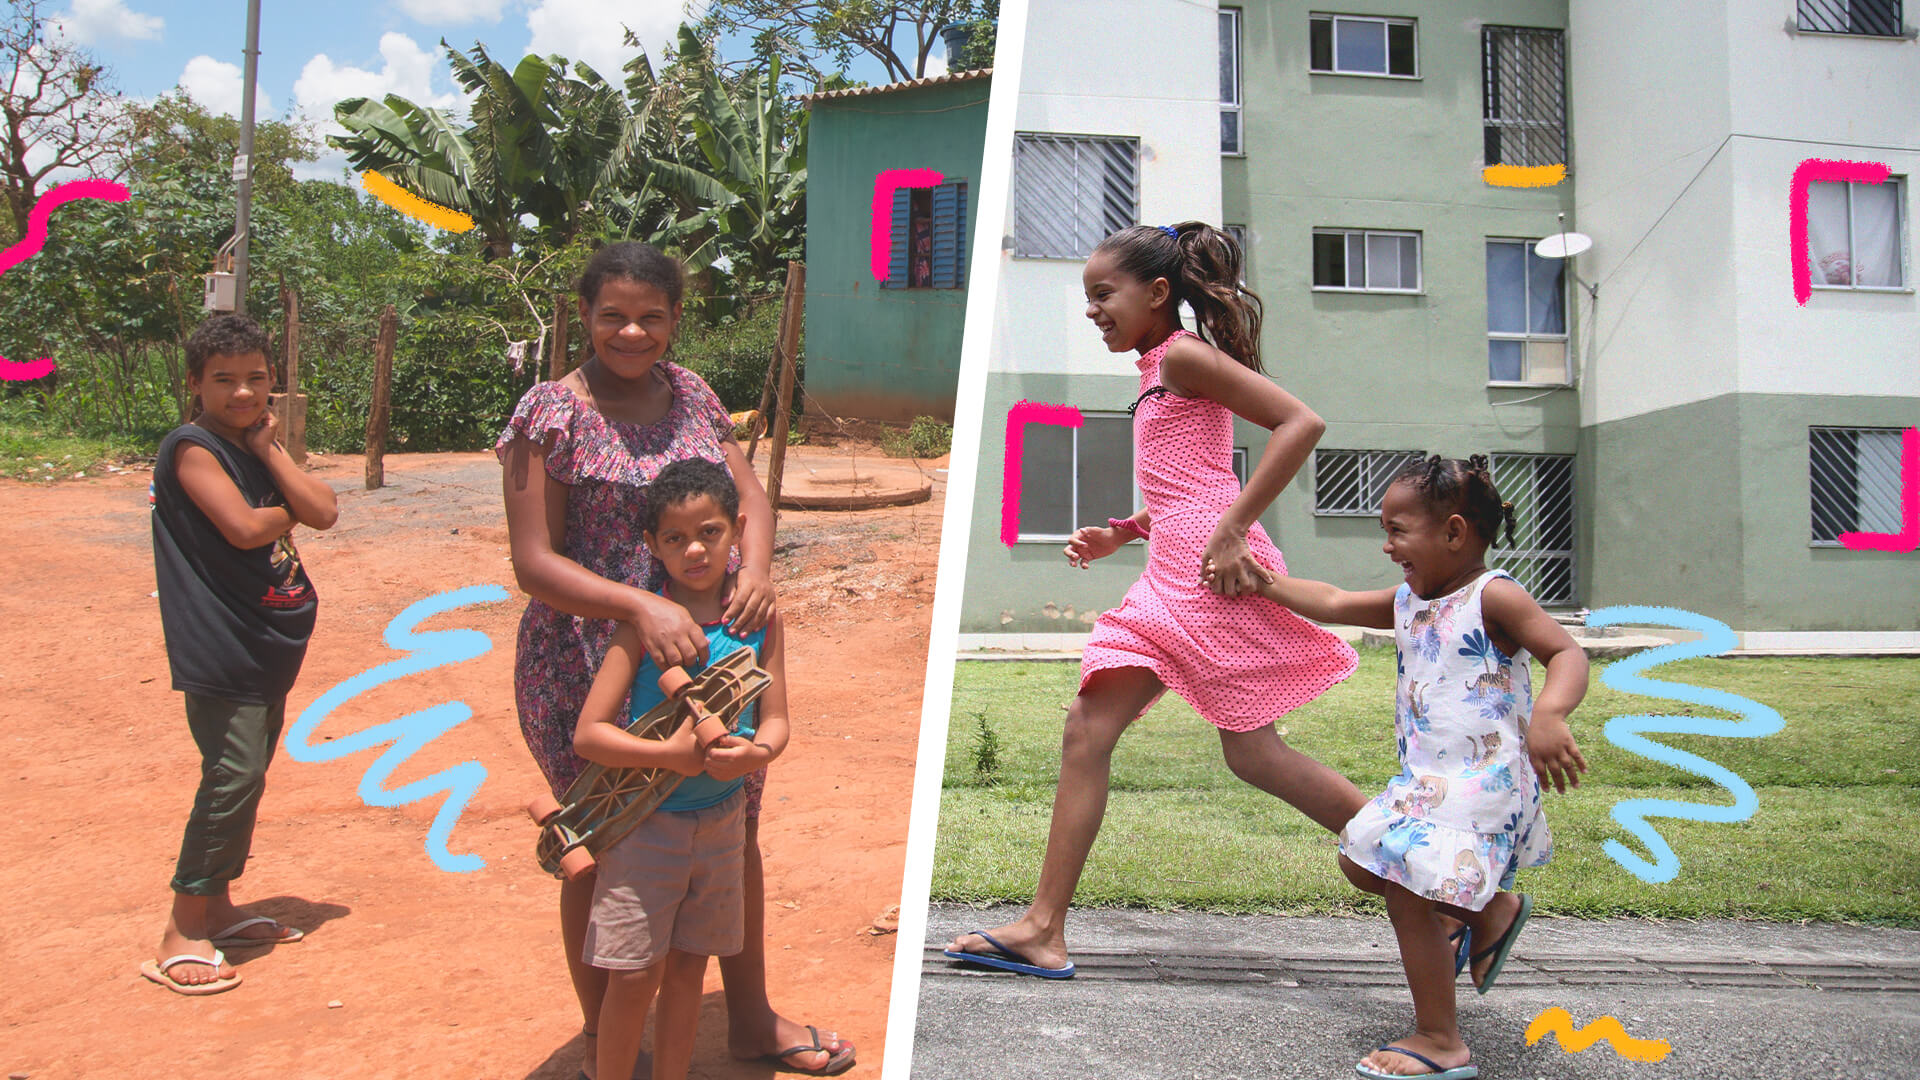 Fotomontagem com duas imagens: à esquerda, crianças num ambiente rural; à direita, crianças correndo no alfalto